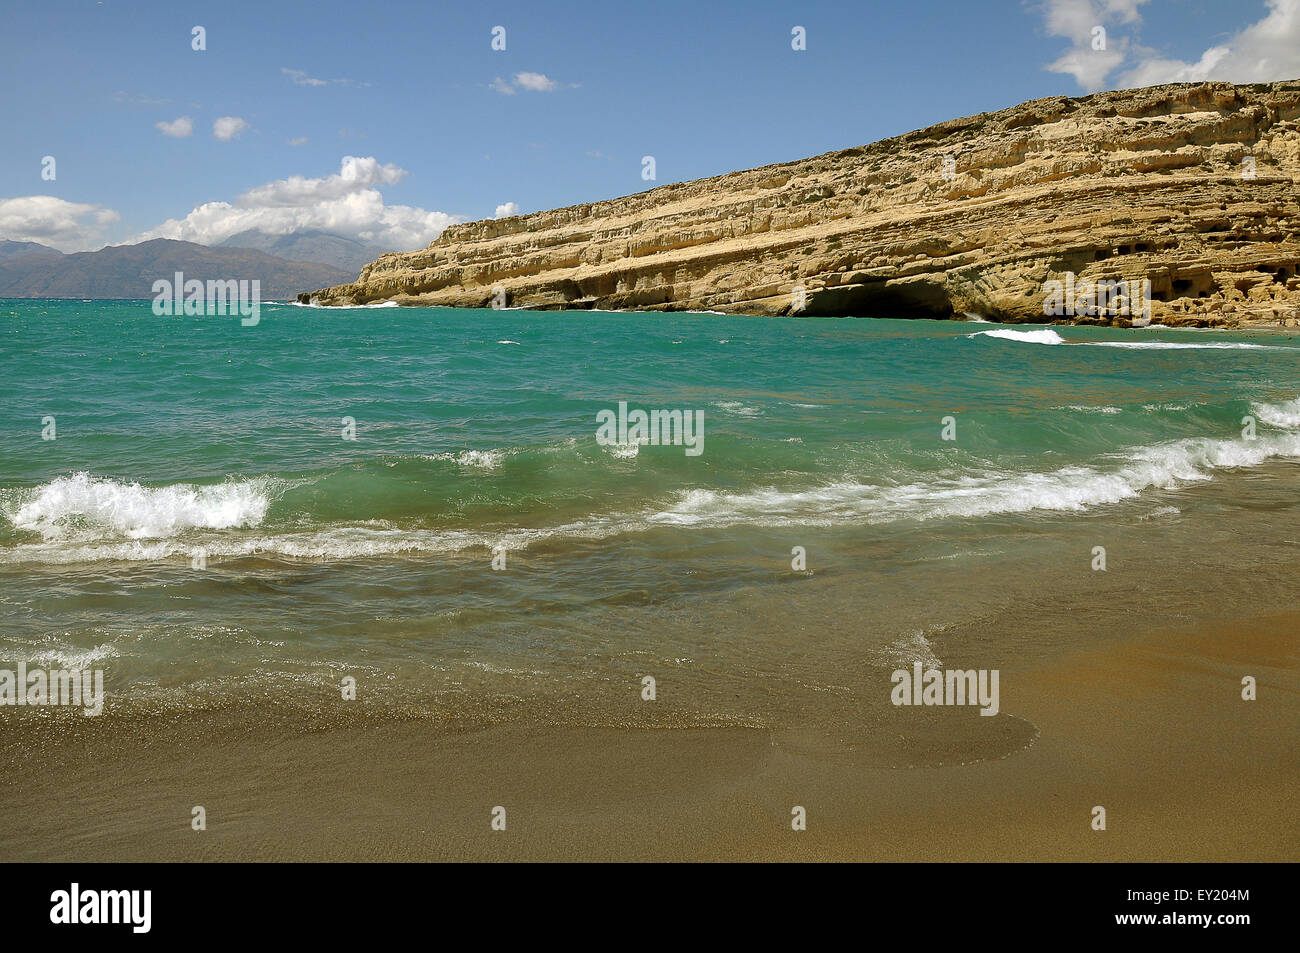 Las rocas de la playa de Matala, costa sur, Creta, Grecia Foto de stock